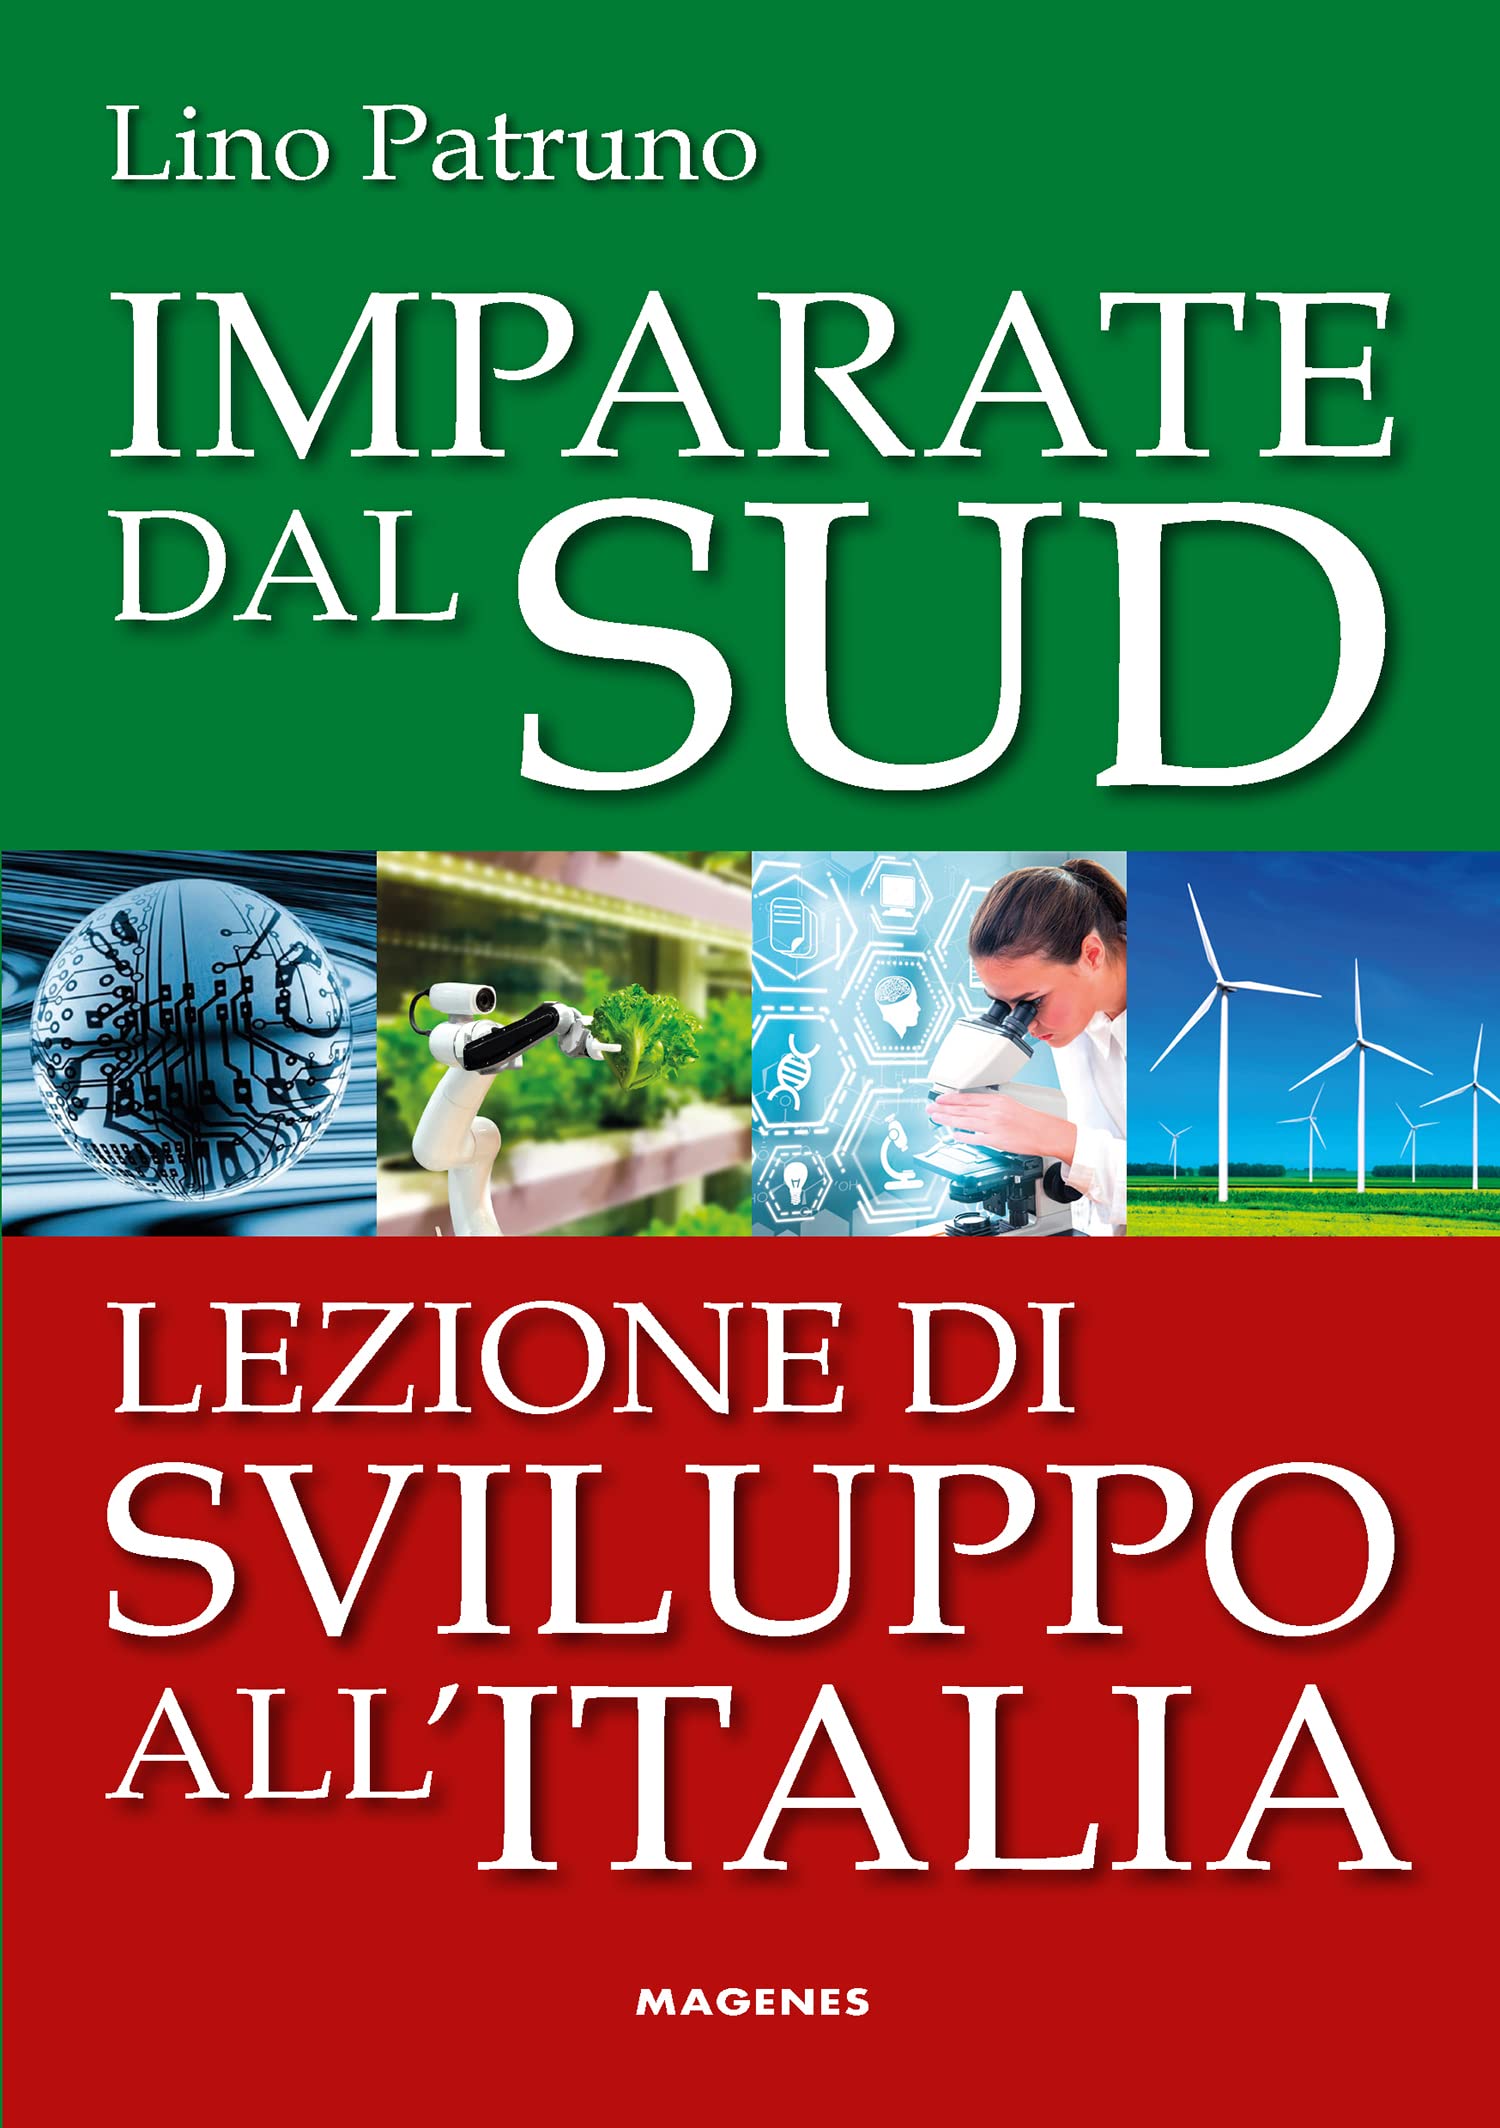 “Imparate dal Sud. Lezioni di sviluppo all’Italia”